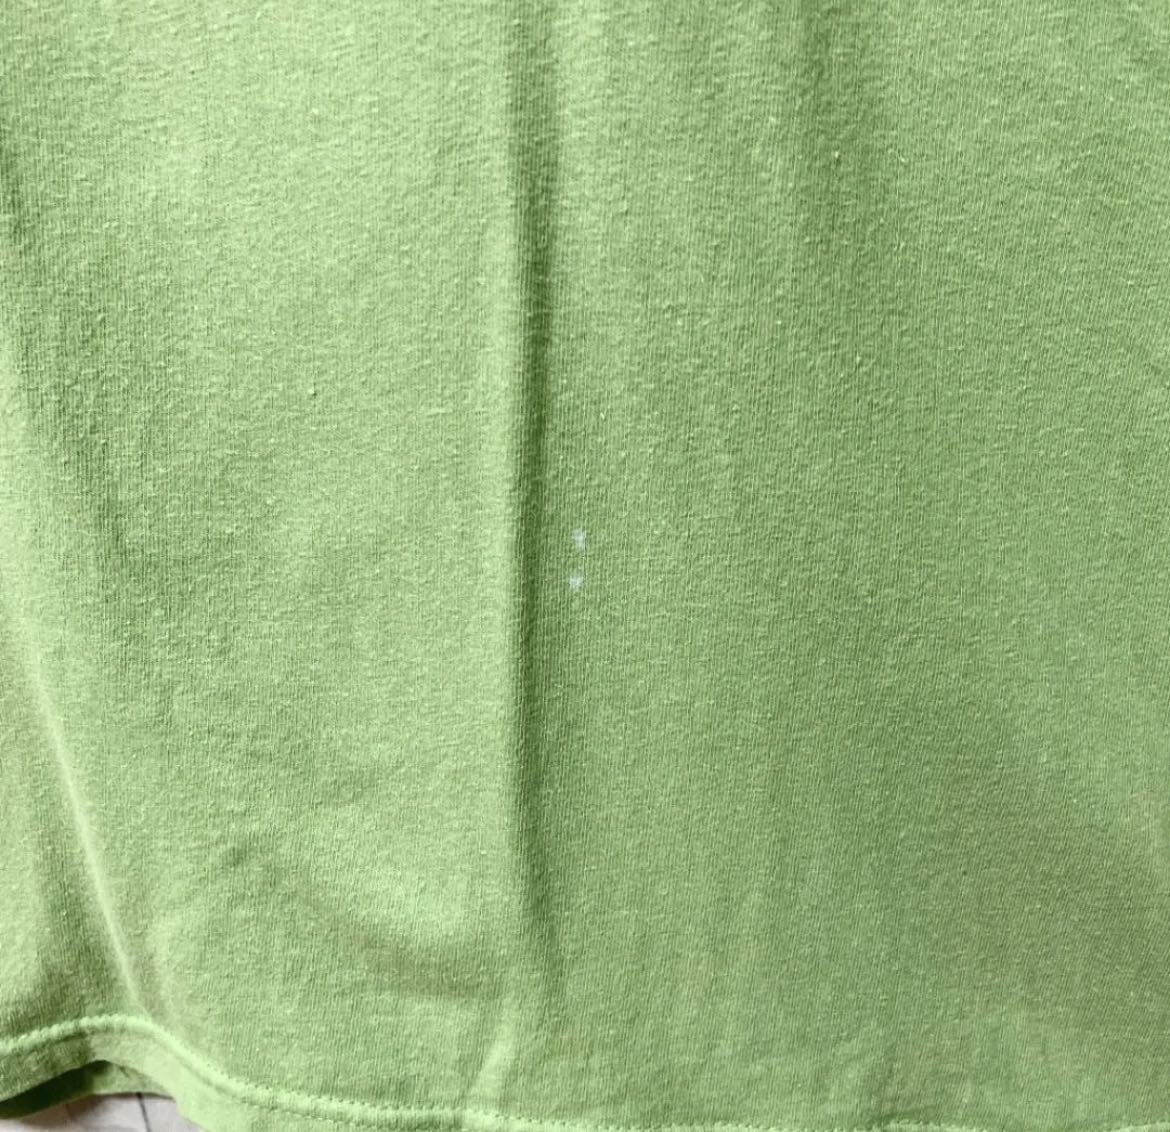 stussy ステューシー 半袖 Tシャツ ビッグロゴ デカロゴ サイズM グリーン メキシコ製 パステルカラー 送料無料